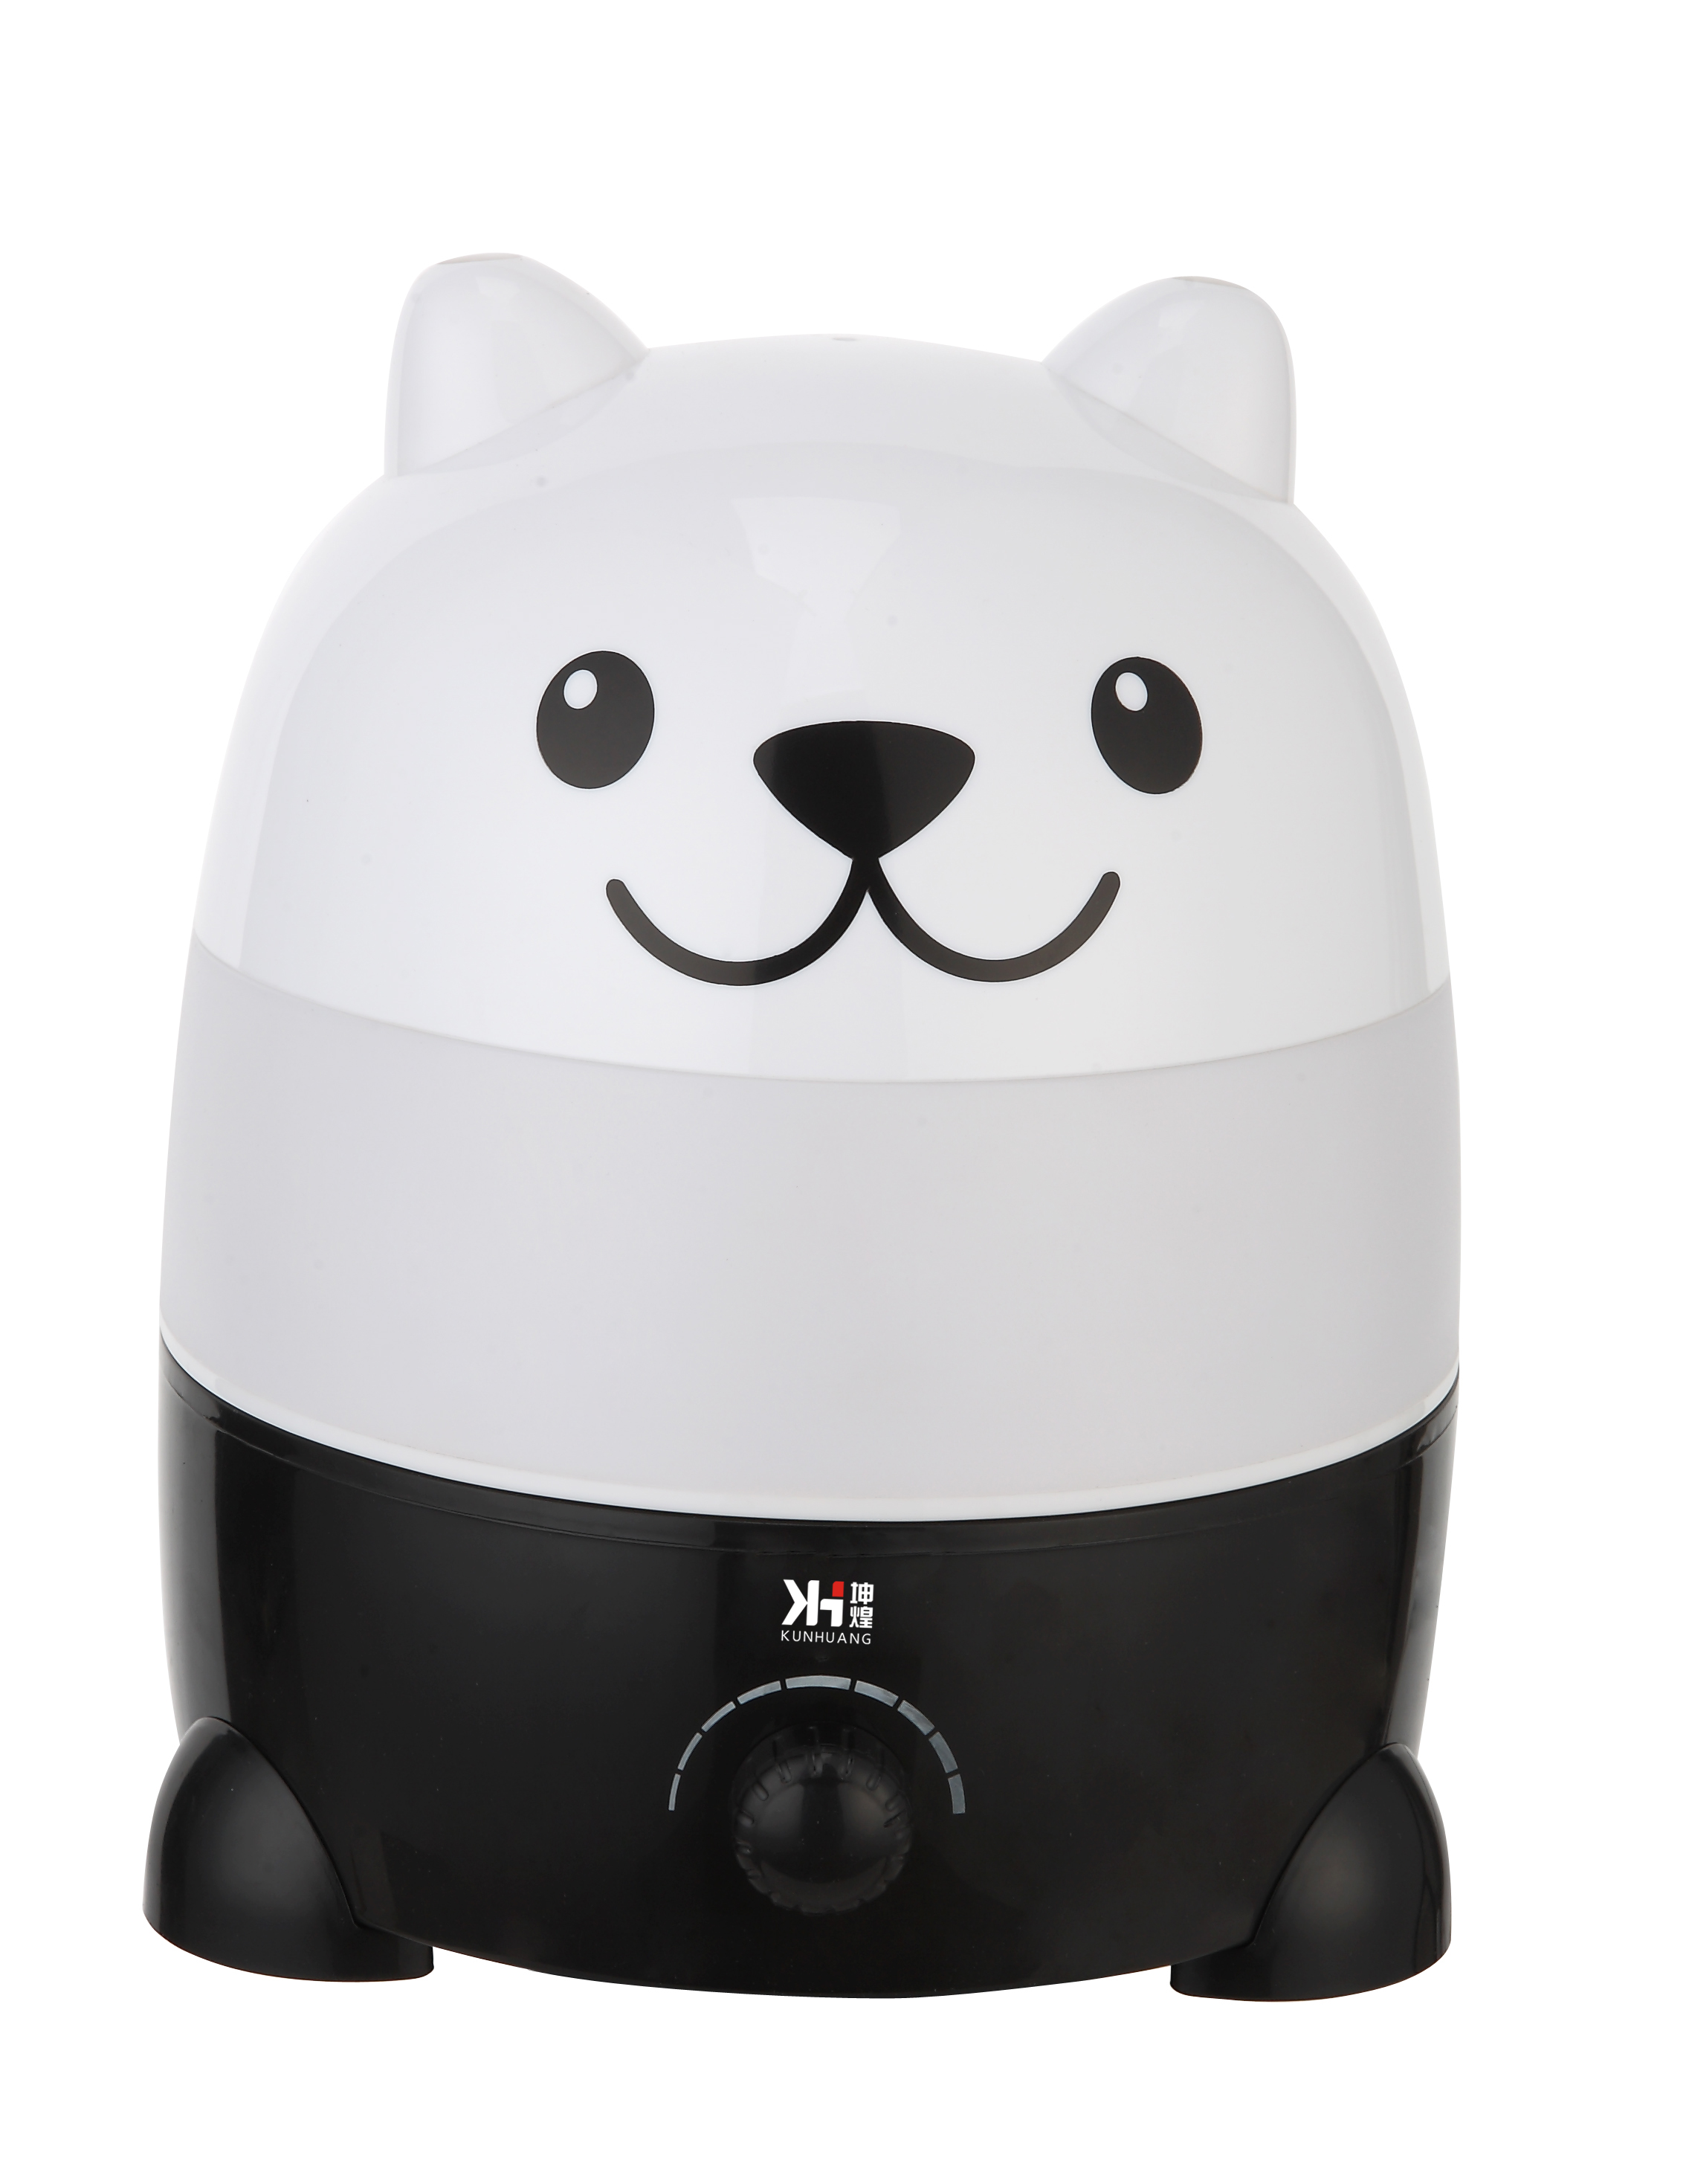 Panda humidifier Ultrasonic humidifier